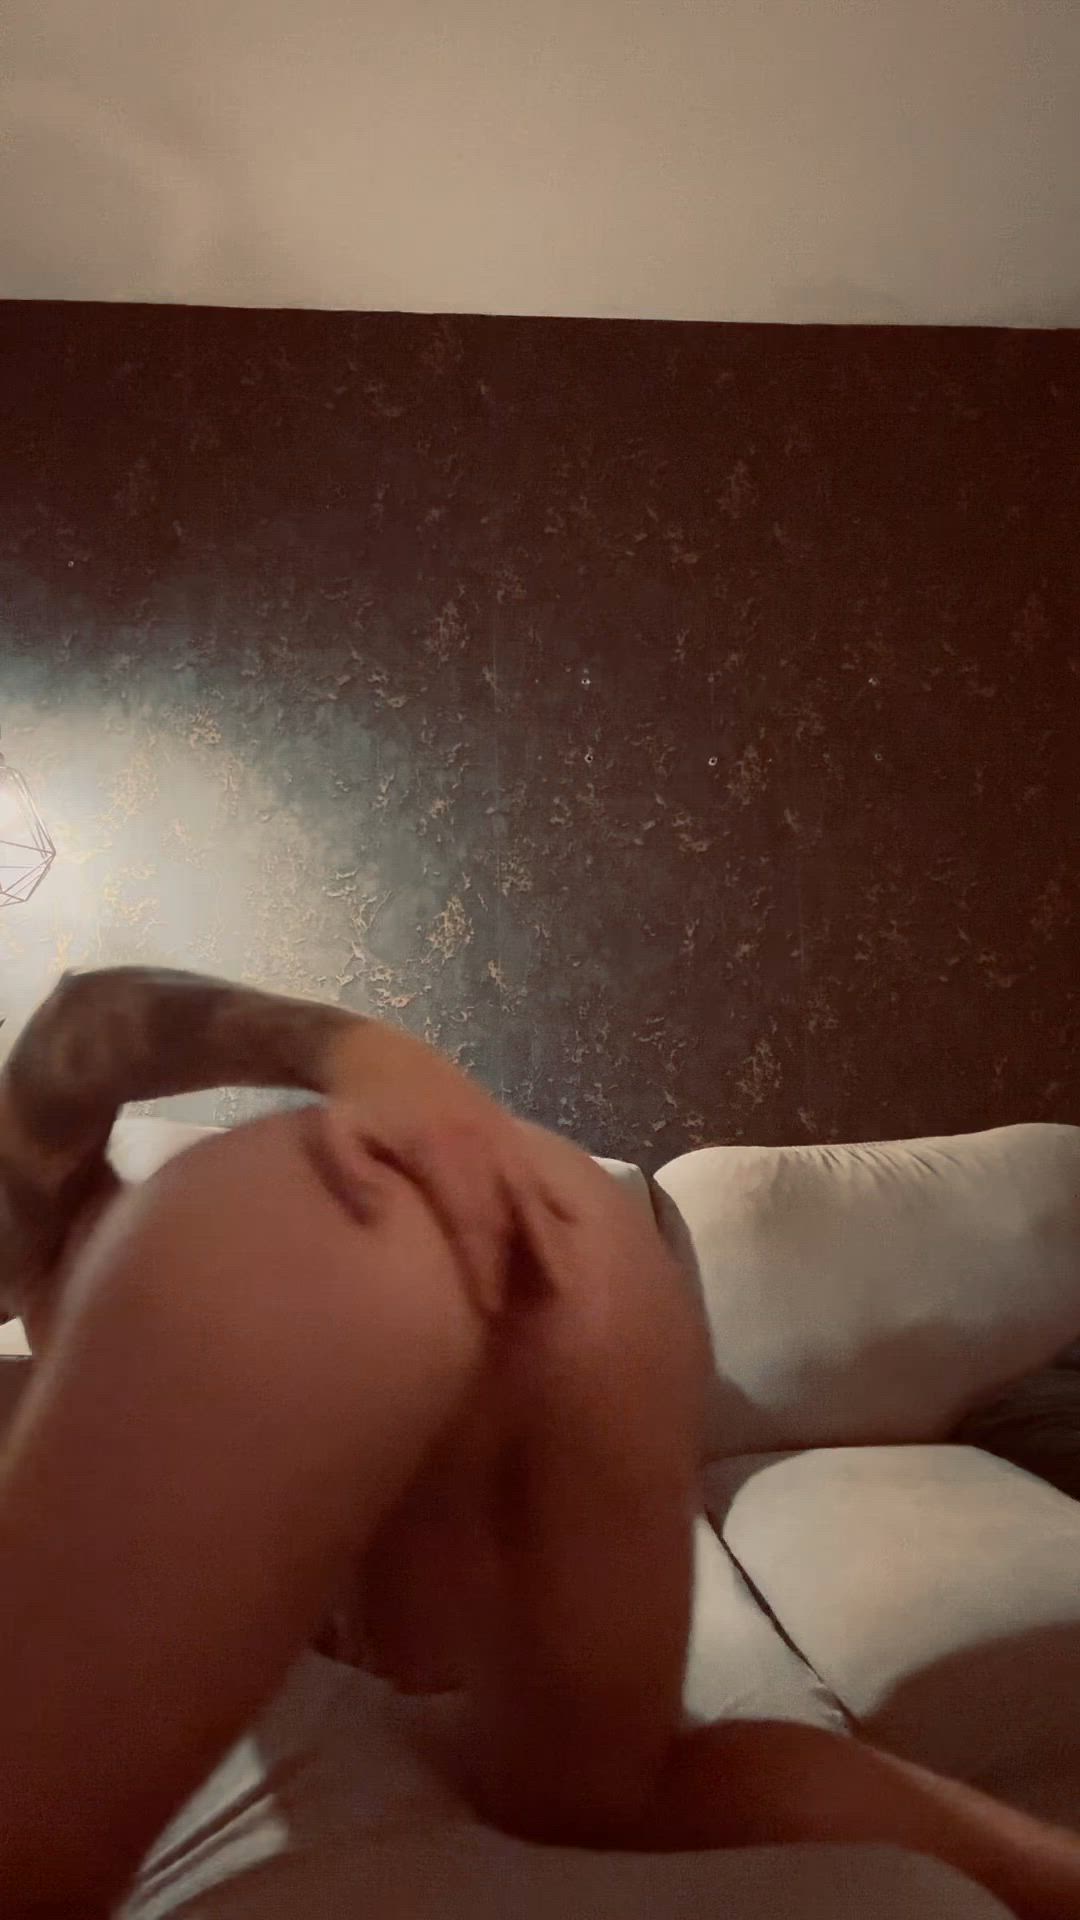 Ass porn video with onlyfans model jam3slp <strong>@jam3slp</strong>